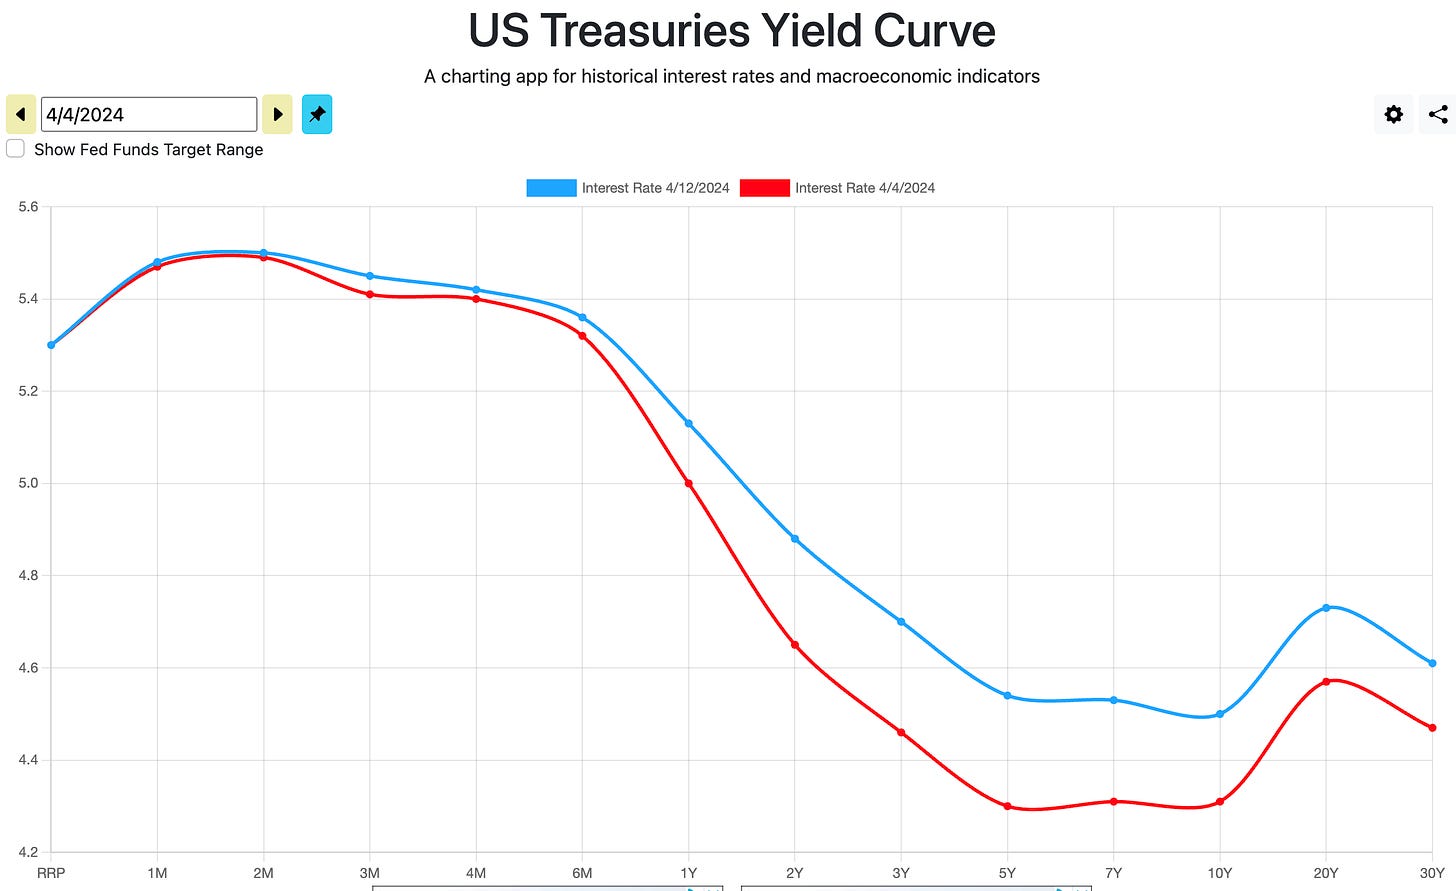 US Treasuries yield curve Treasury Yield Curve (week-over-week)